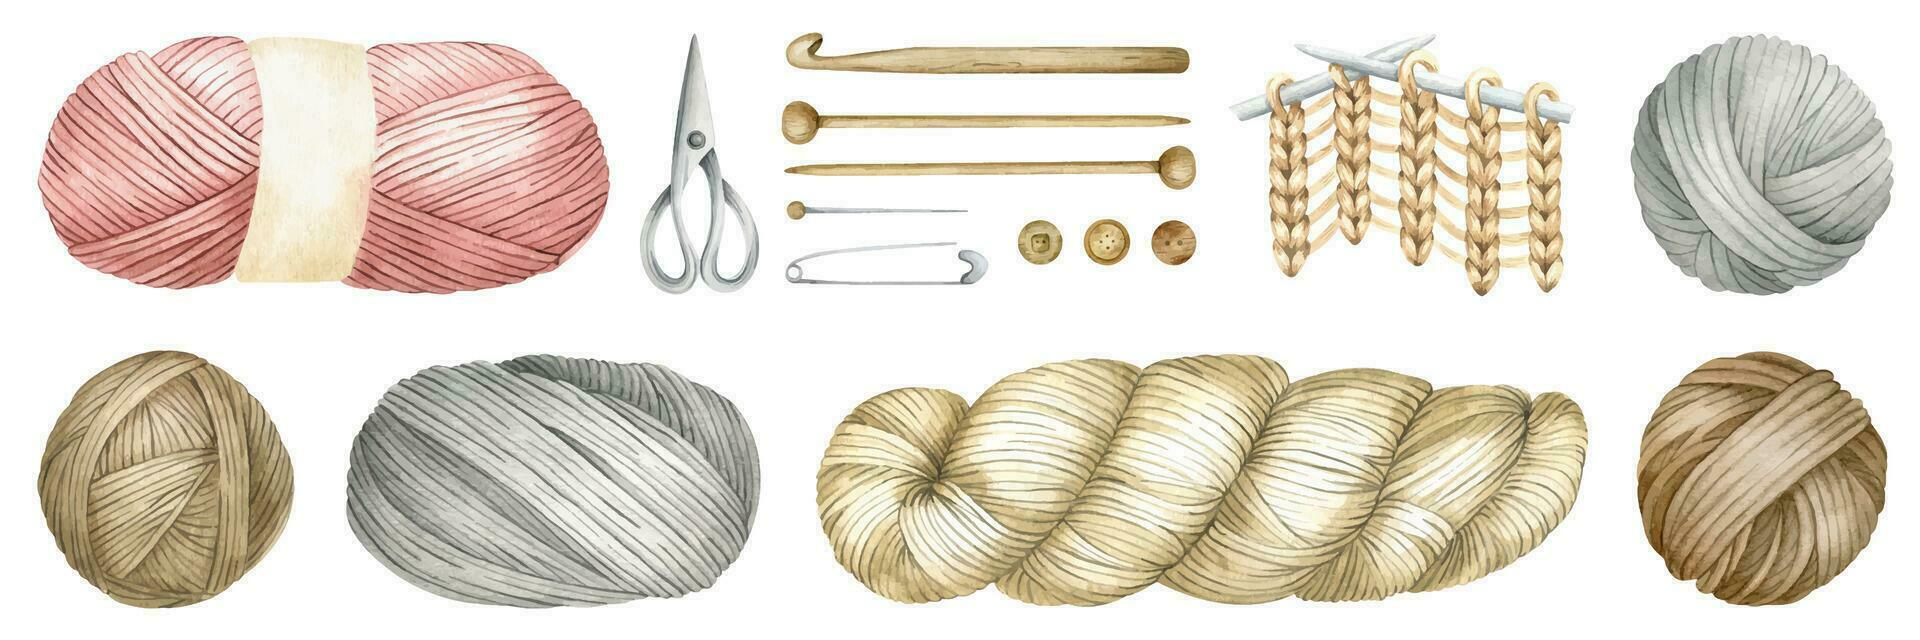 uppsättning av garn bollar, bollar av ull, skeins av garn, trä- stickning nålar, krok, knappar. vattenfärg isolerat illustrationer. för produkt förpackning design, stickare blogg, handarbete Lagra vektor